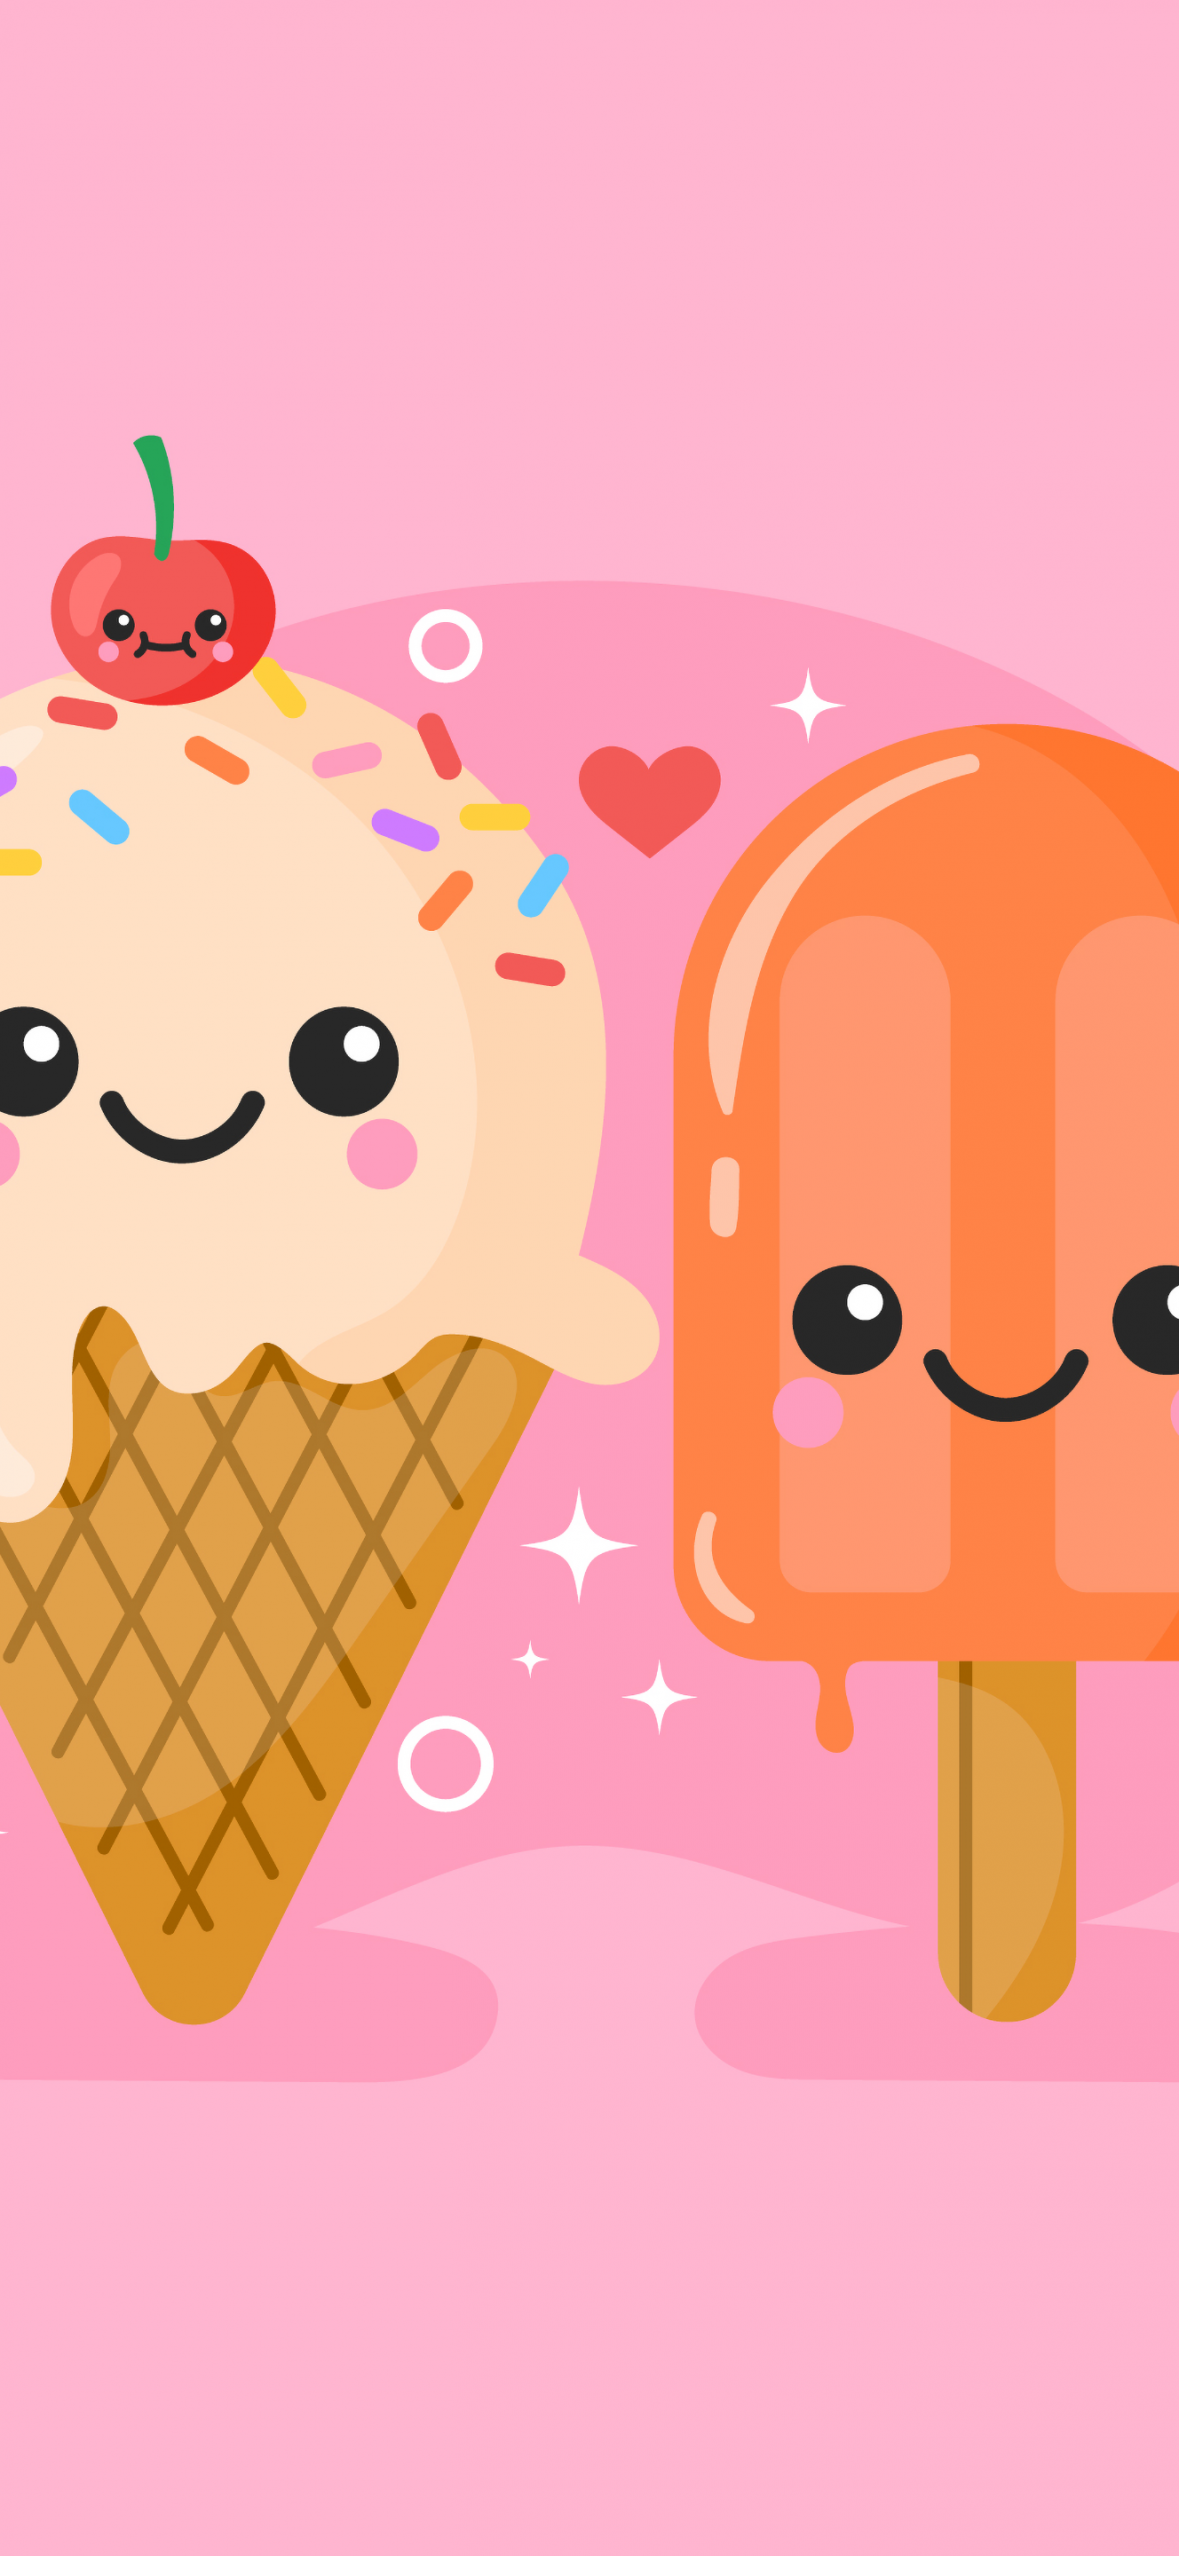 Hãy cùng đắm chìm trong thế giới ngọt ngào của món kem nhé! Bộ sưu tập hình nền 4K về kem đáng yêu với những hình ảnh cực kawaii sẽ khiến bạn thích thú. Tải ngay để làm mới trang trí cho màn hình điện thoại của bạn.